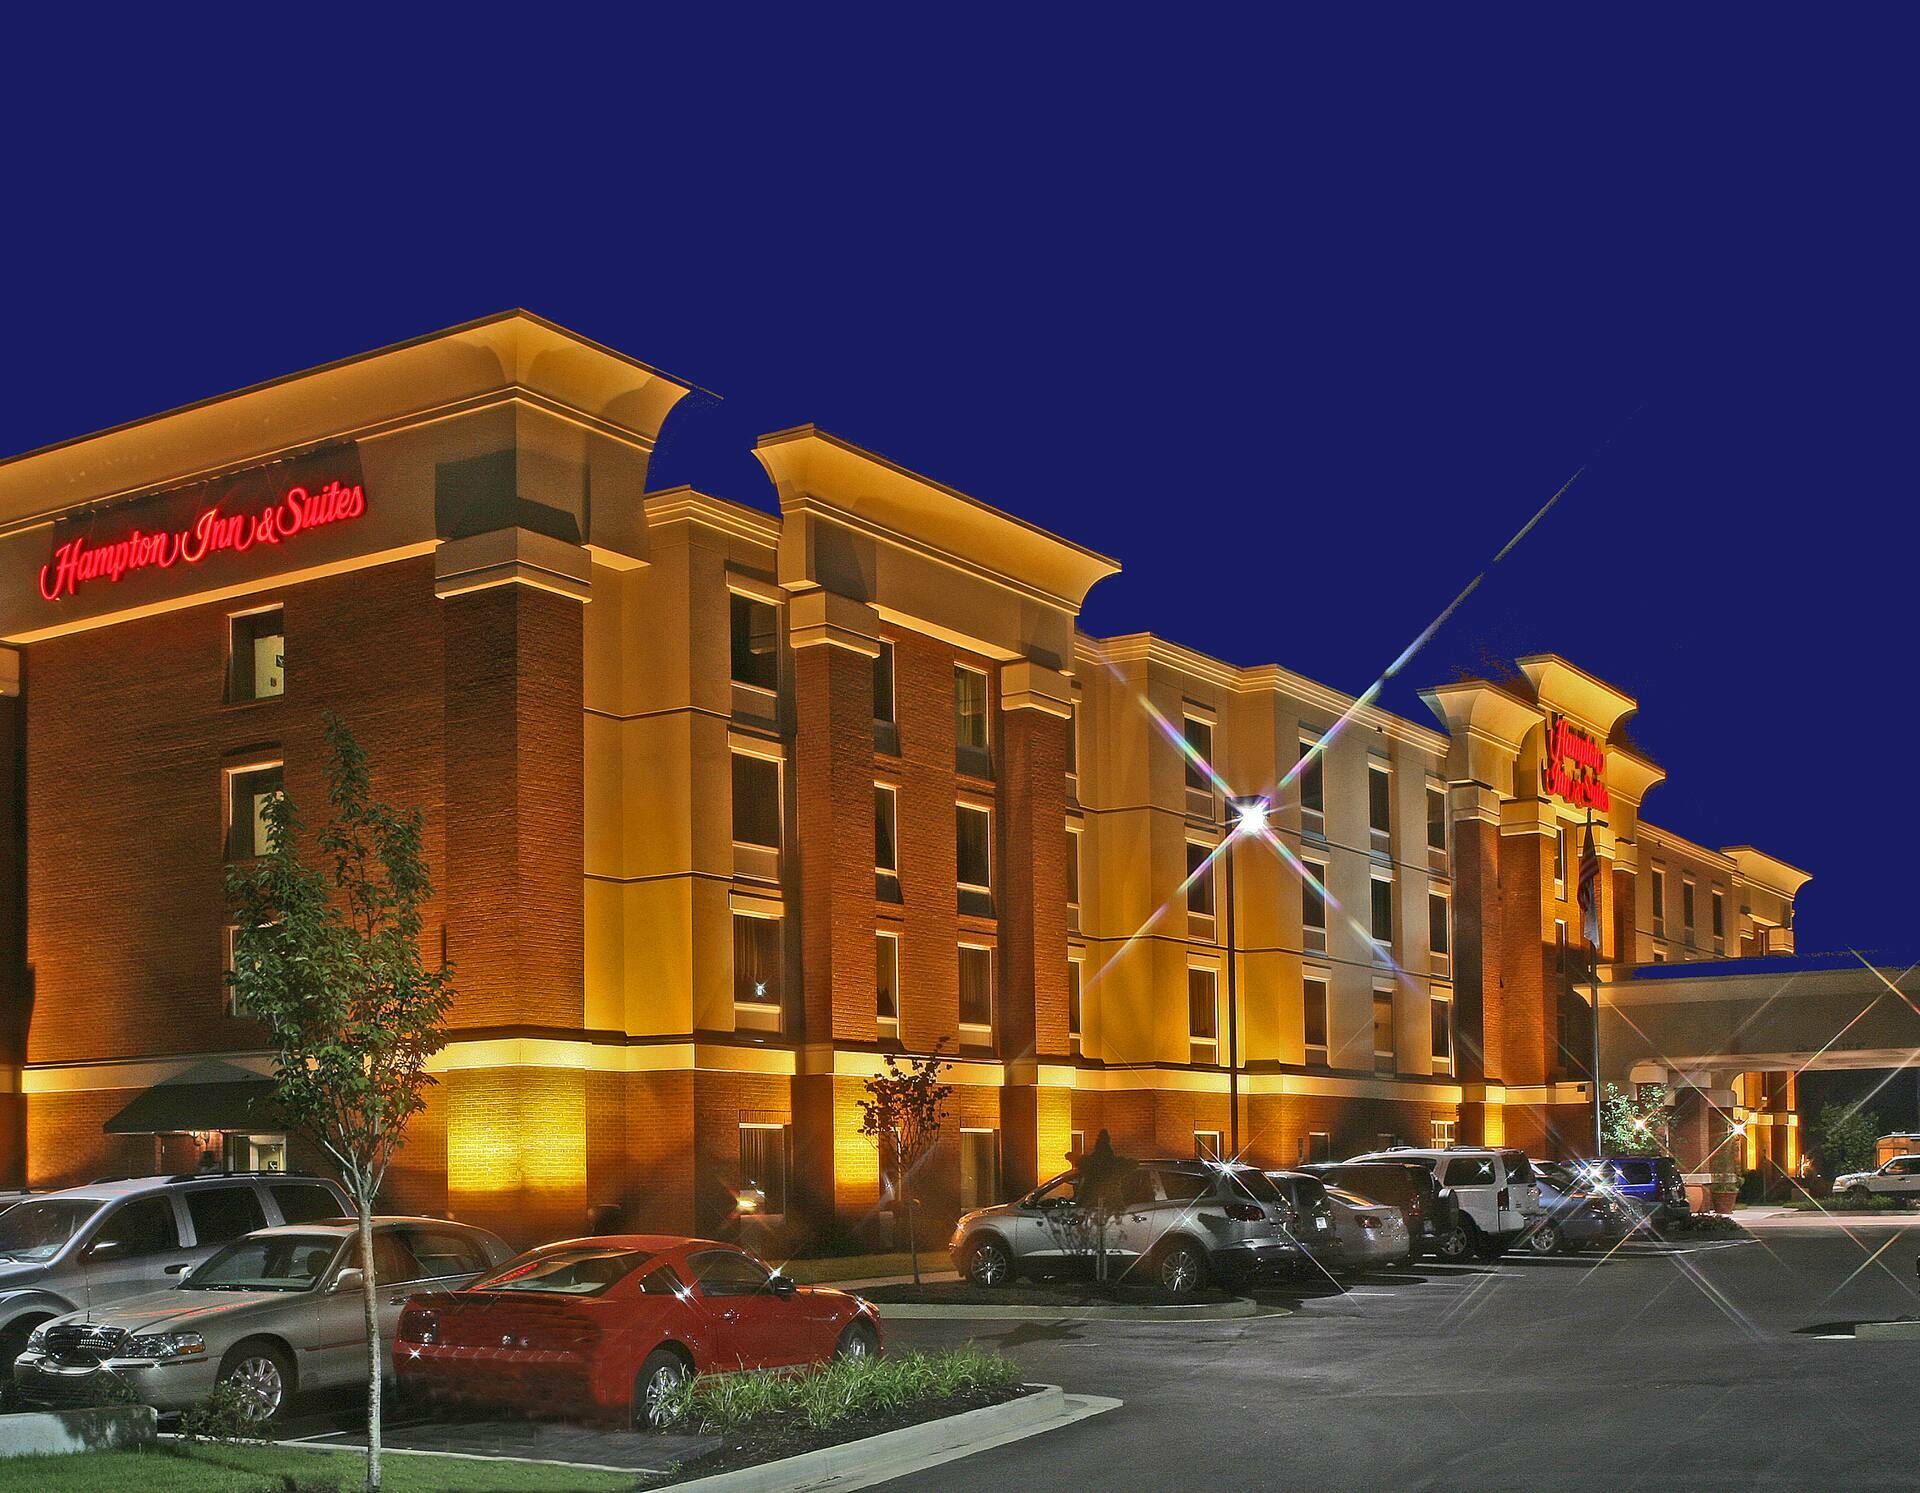 Photo of Hampton Inn & Suites Murfreesboro, Murfreesboro, TN